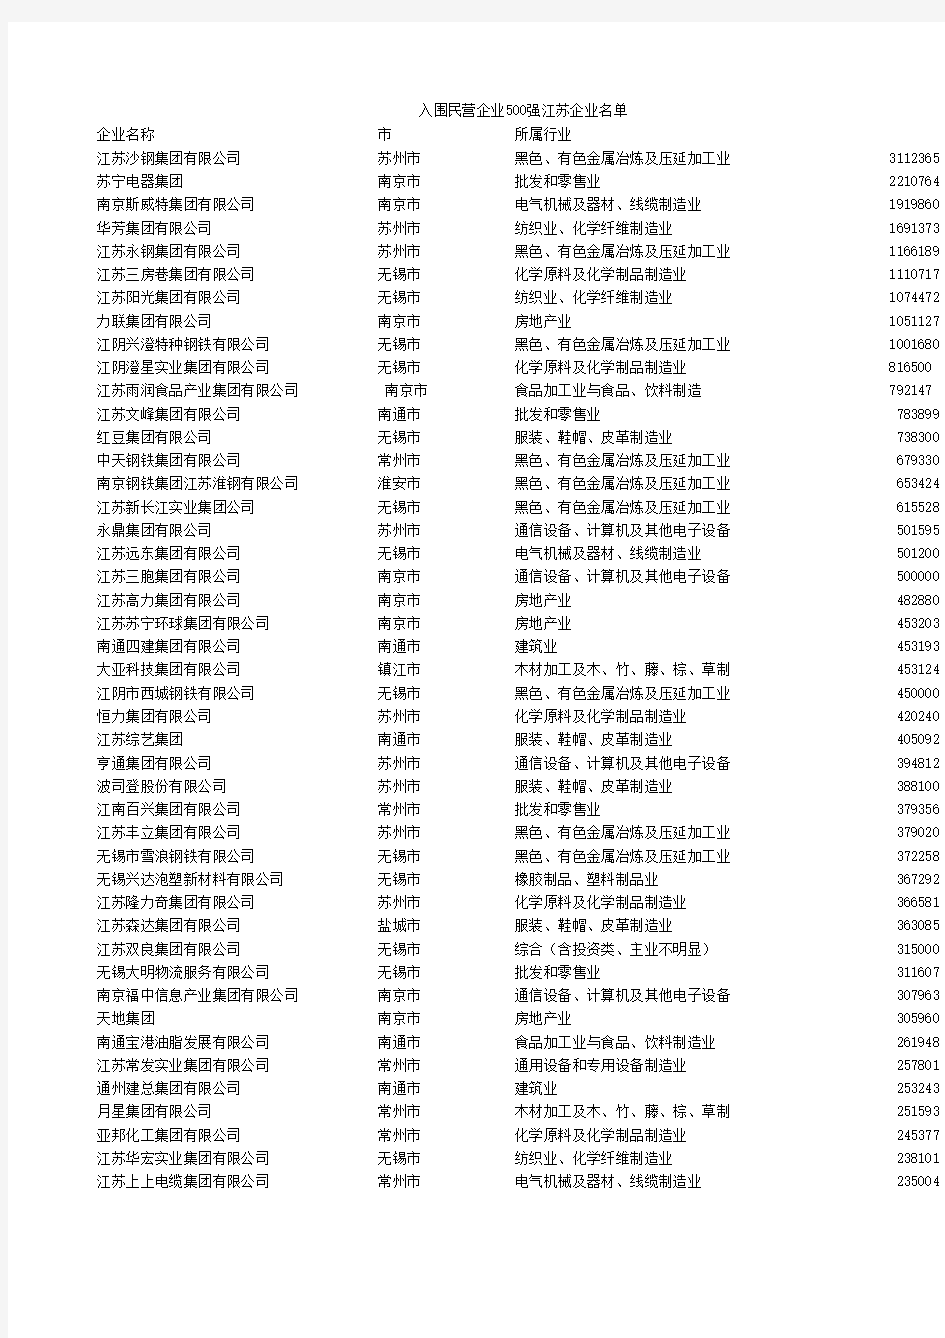 江苏500强企业名单